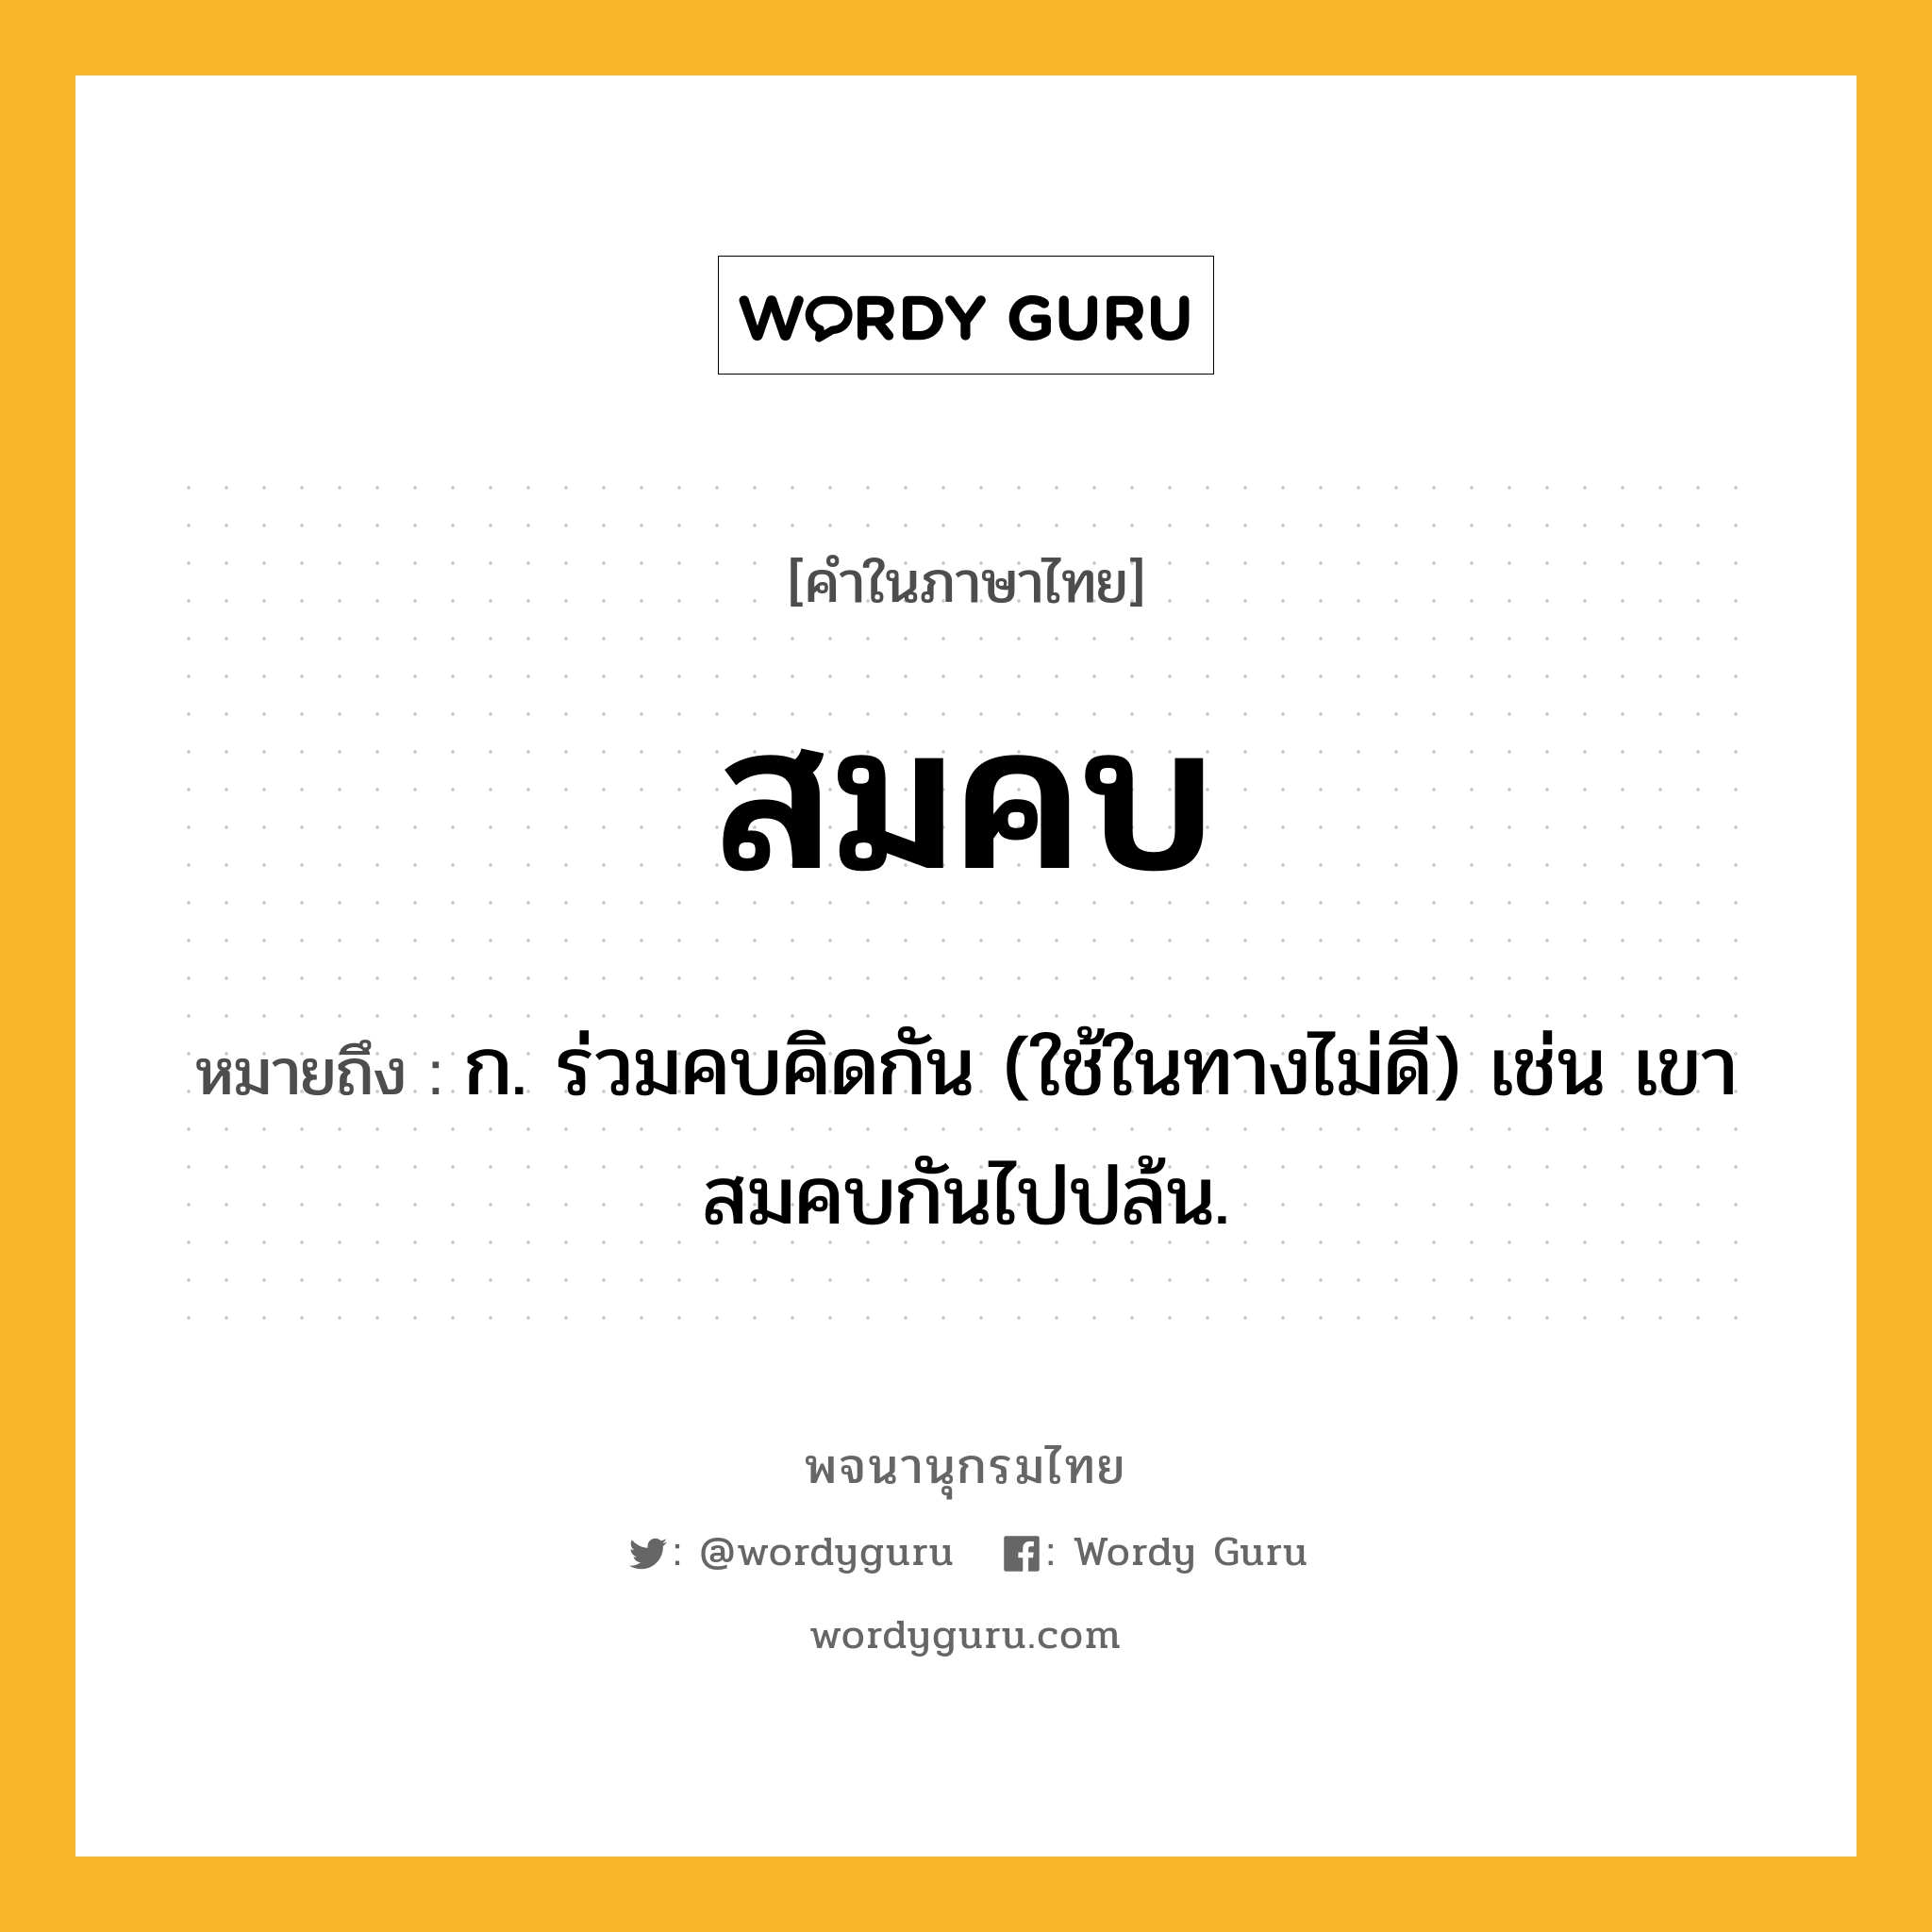 สมคบ หมายถึงอะไร?, คำในภาษาไทย สมคบ หมายถึง ก. ร่วมคบคิดกัน (ใช้ในทางไม่ดี) เช่น เขาสมคบกันไปปล้น.